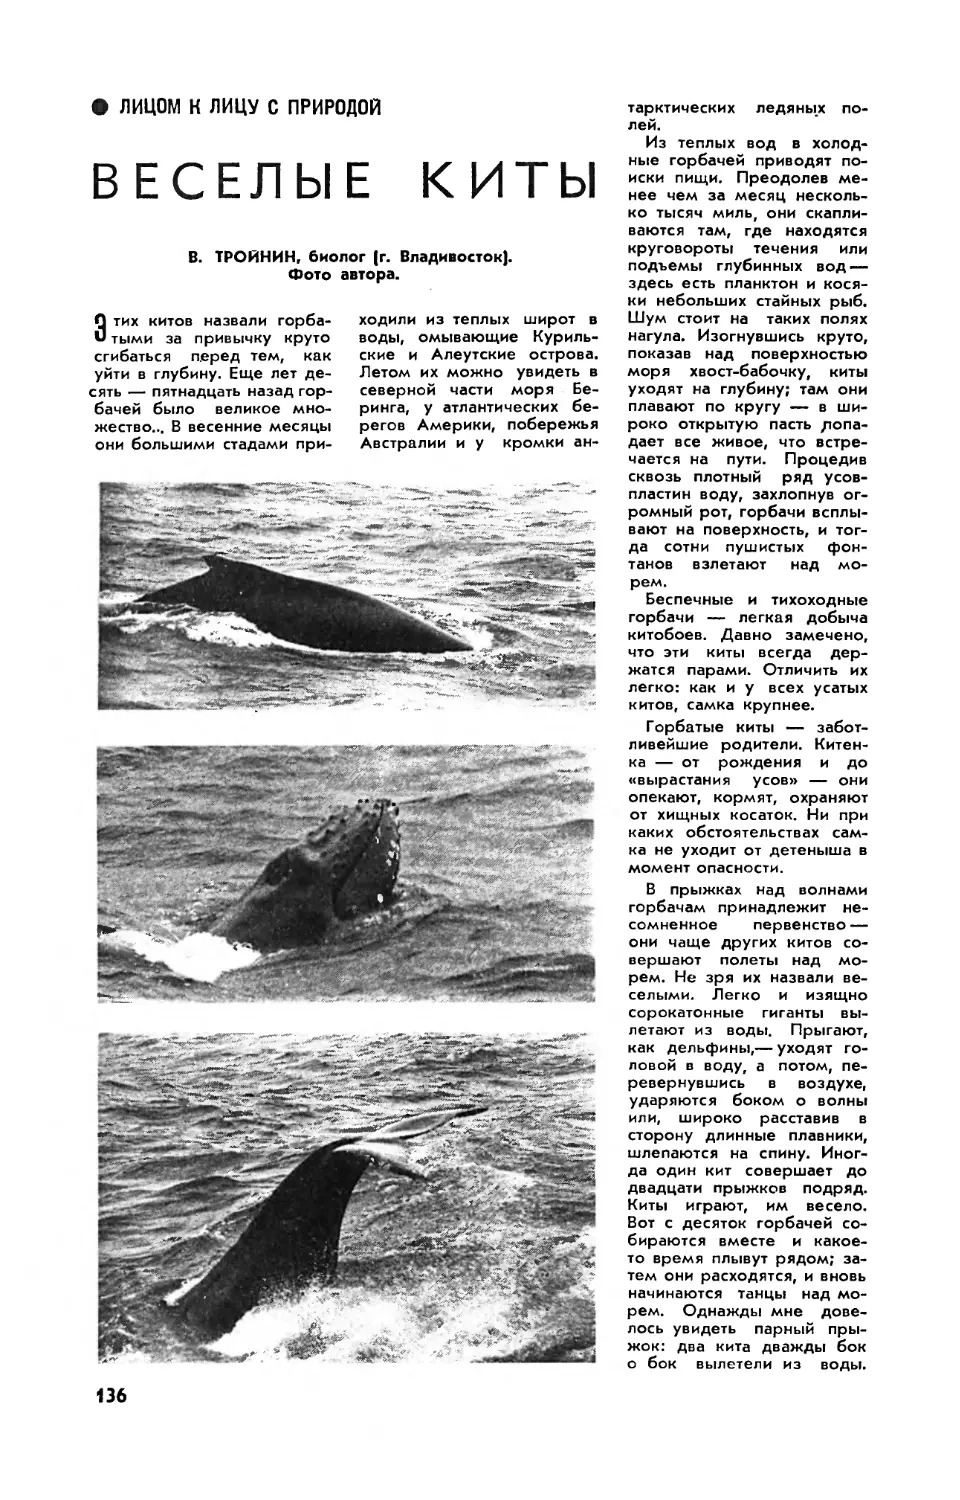 В. ТРОЙНИН — Веселые киты